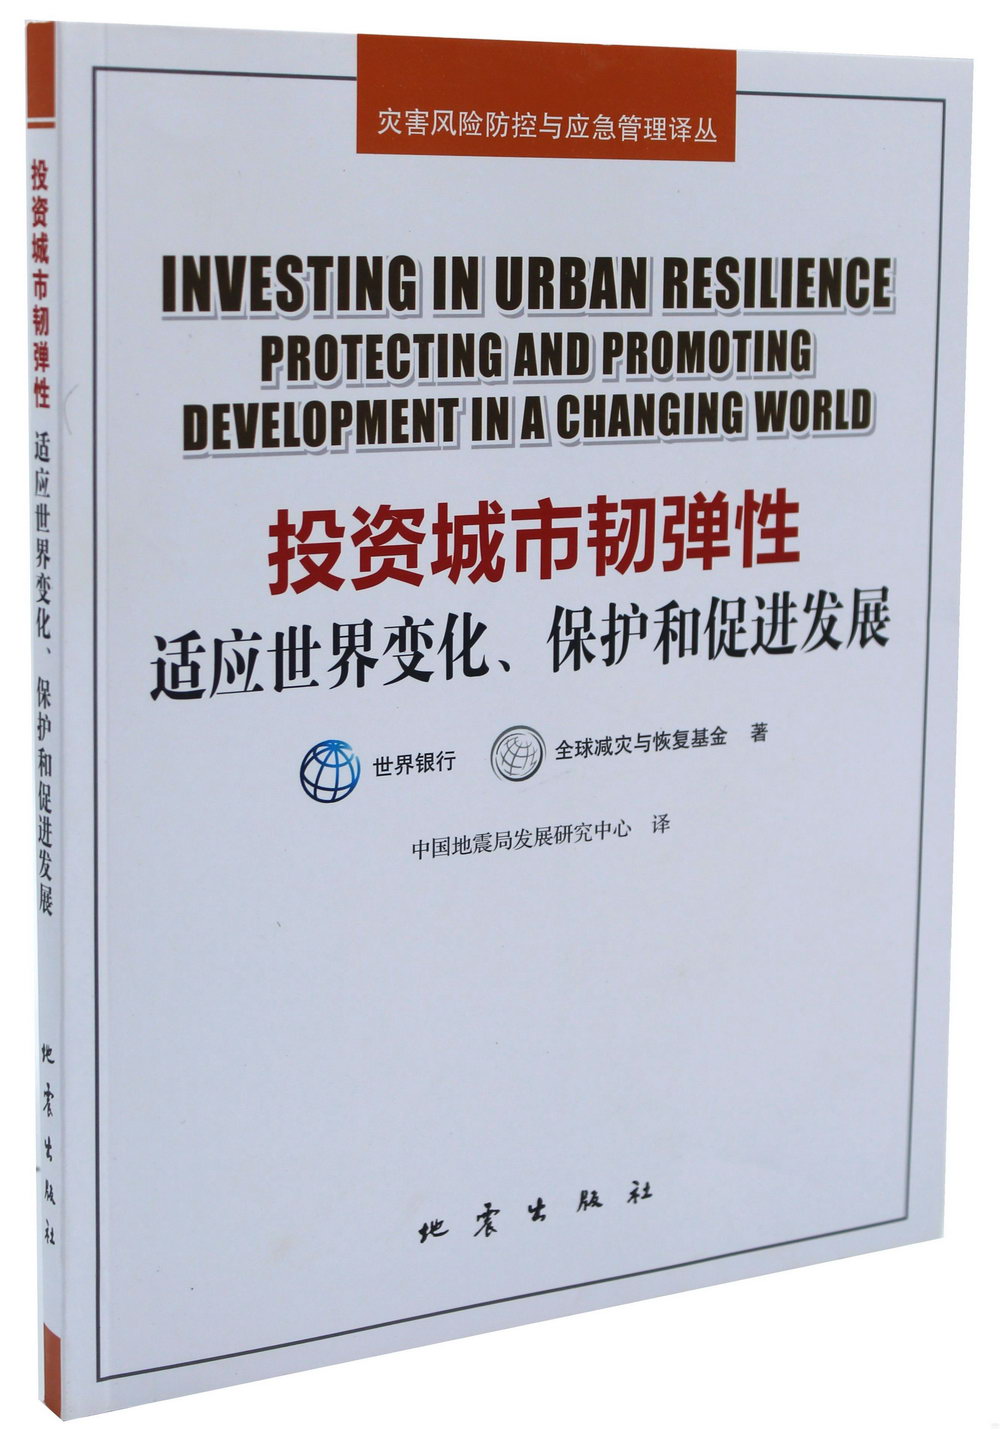 投資城市韌彈性：適應世界變化、保護和促進發展